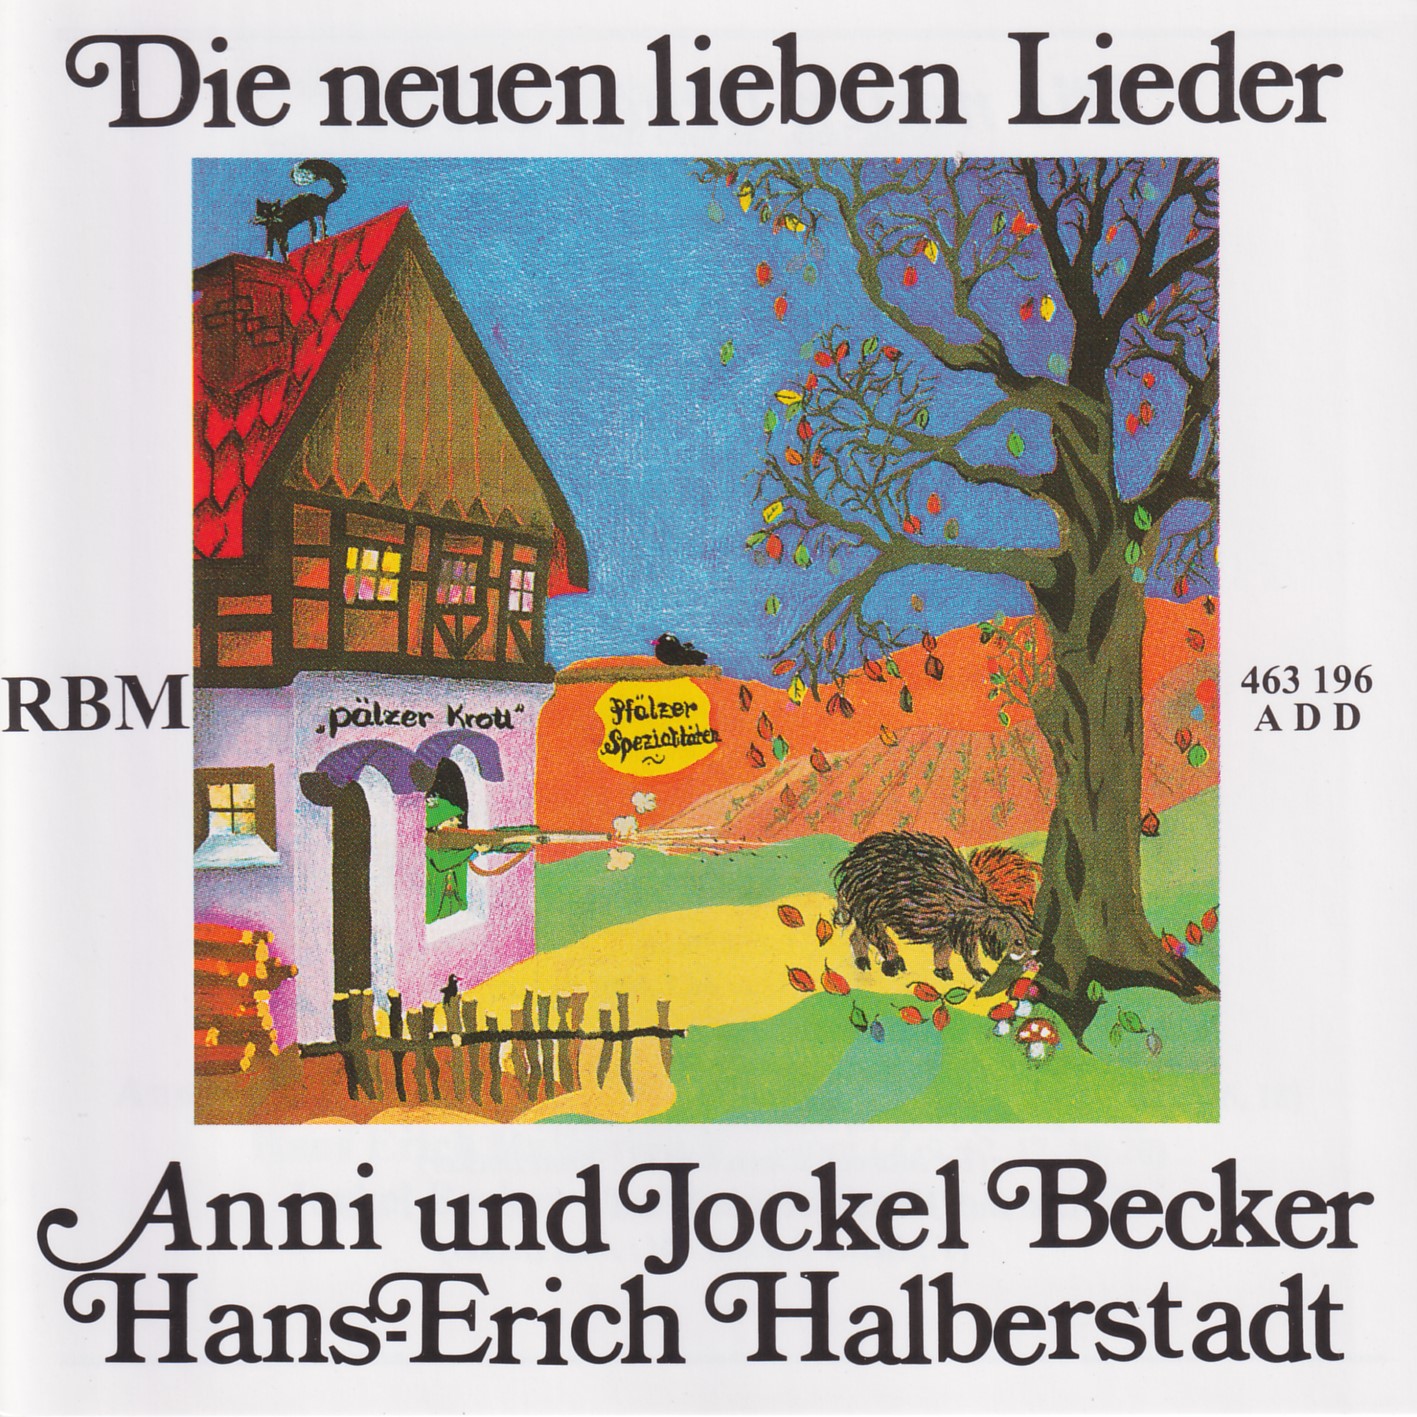 Die neuen lieben Lieder - Becker/Halberstadt